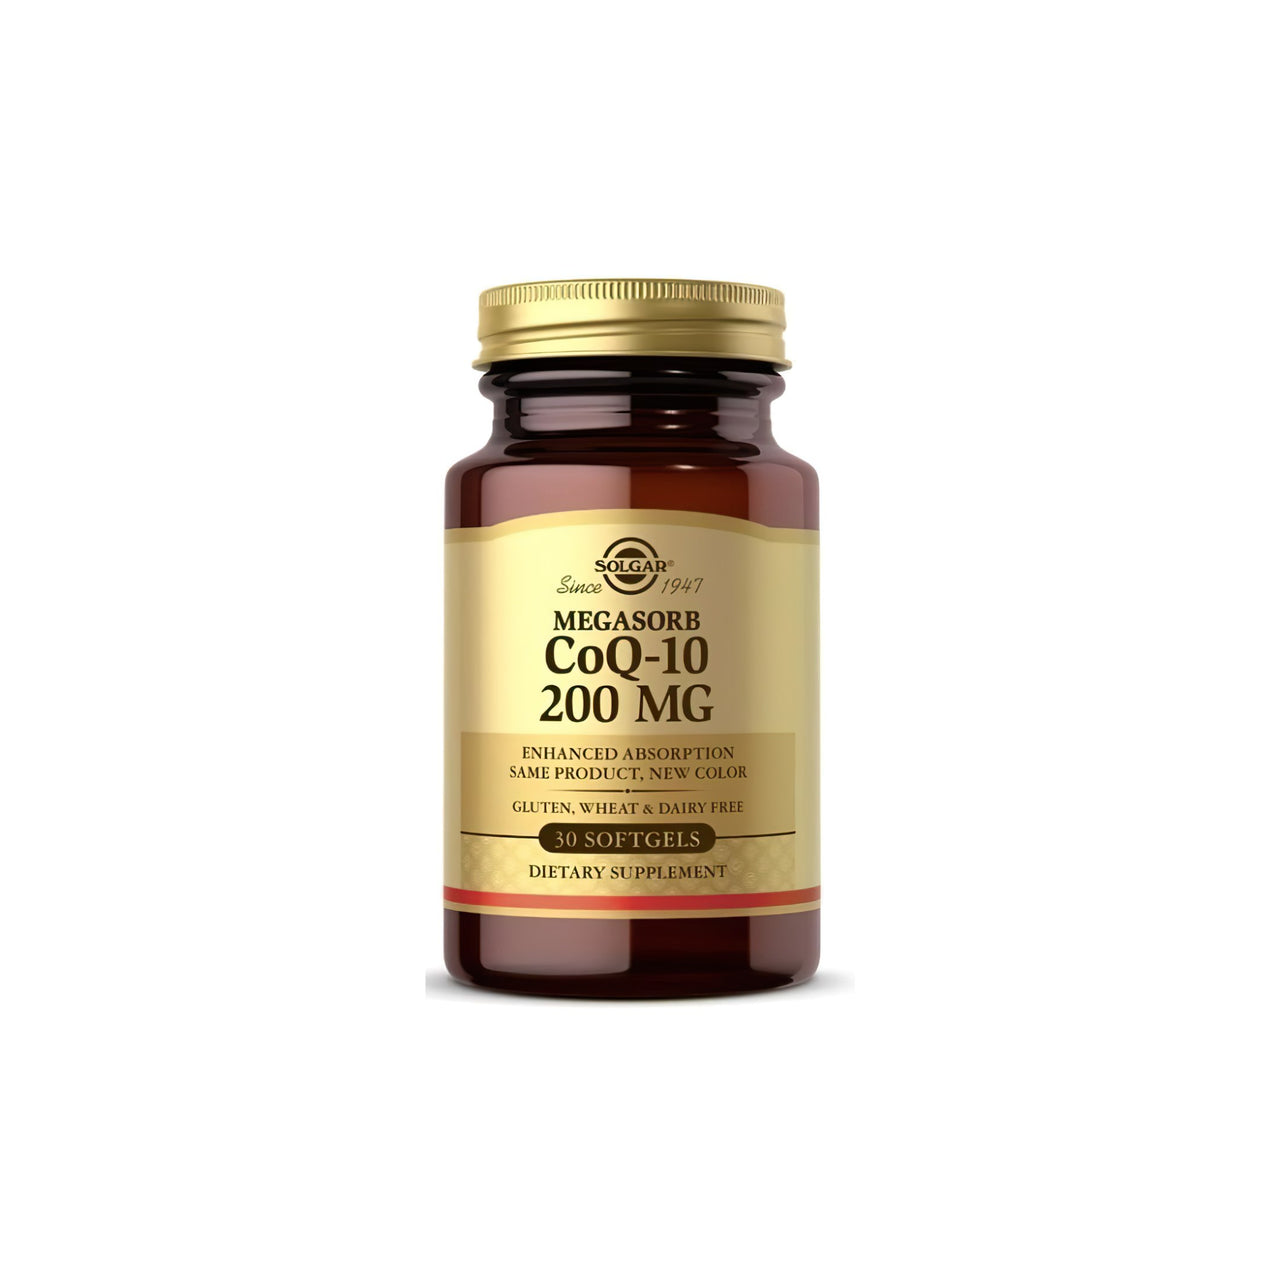 Um frasco de Solgar Megasorb CoQ-10 200 mg 30 Softgels sobre um fundo branco.